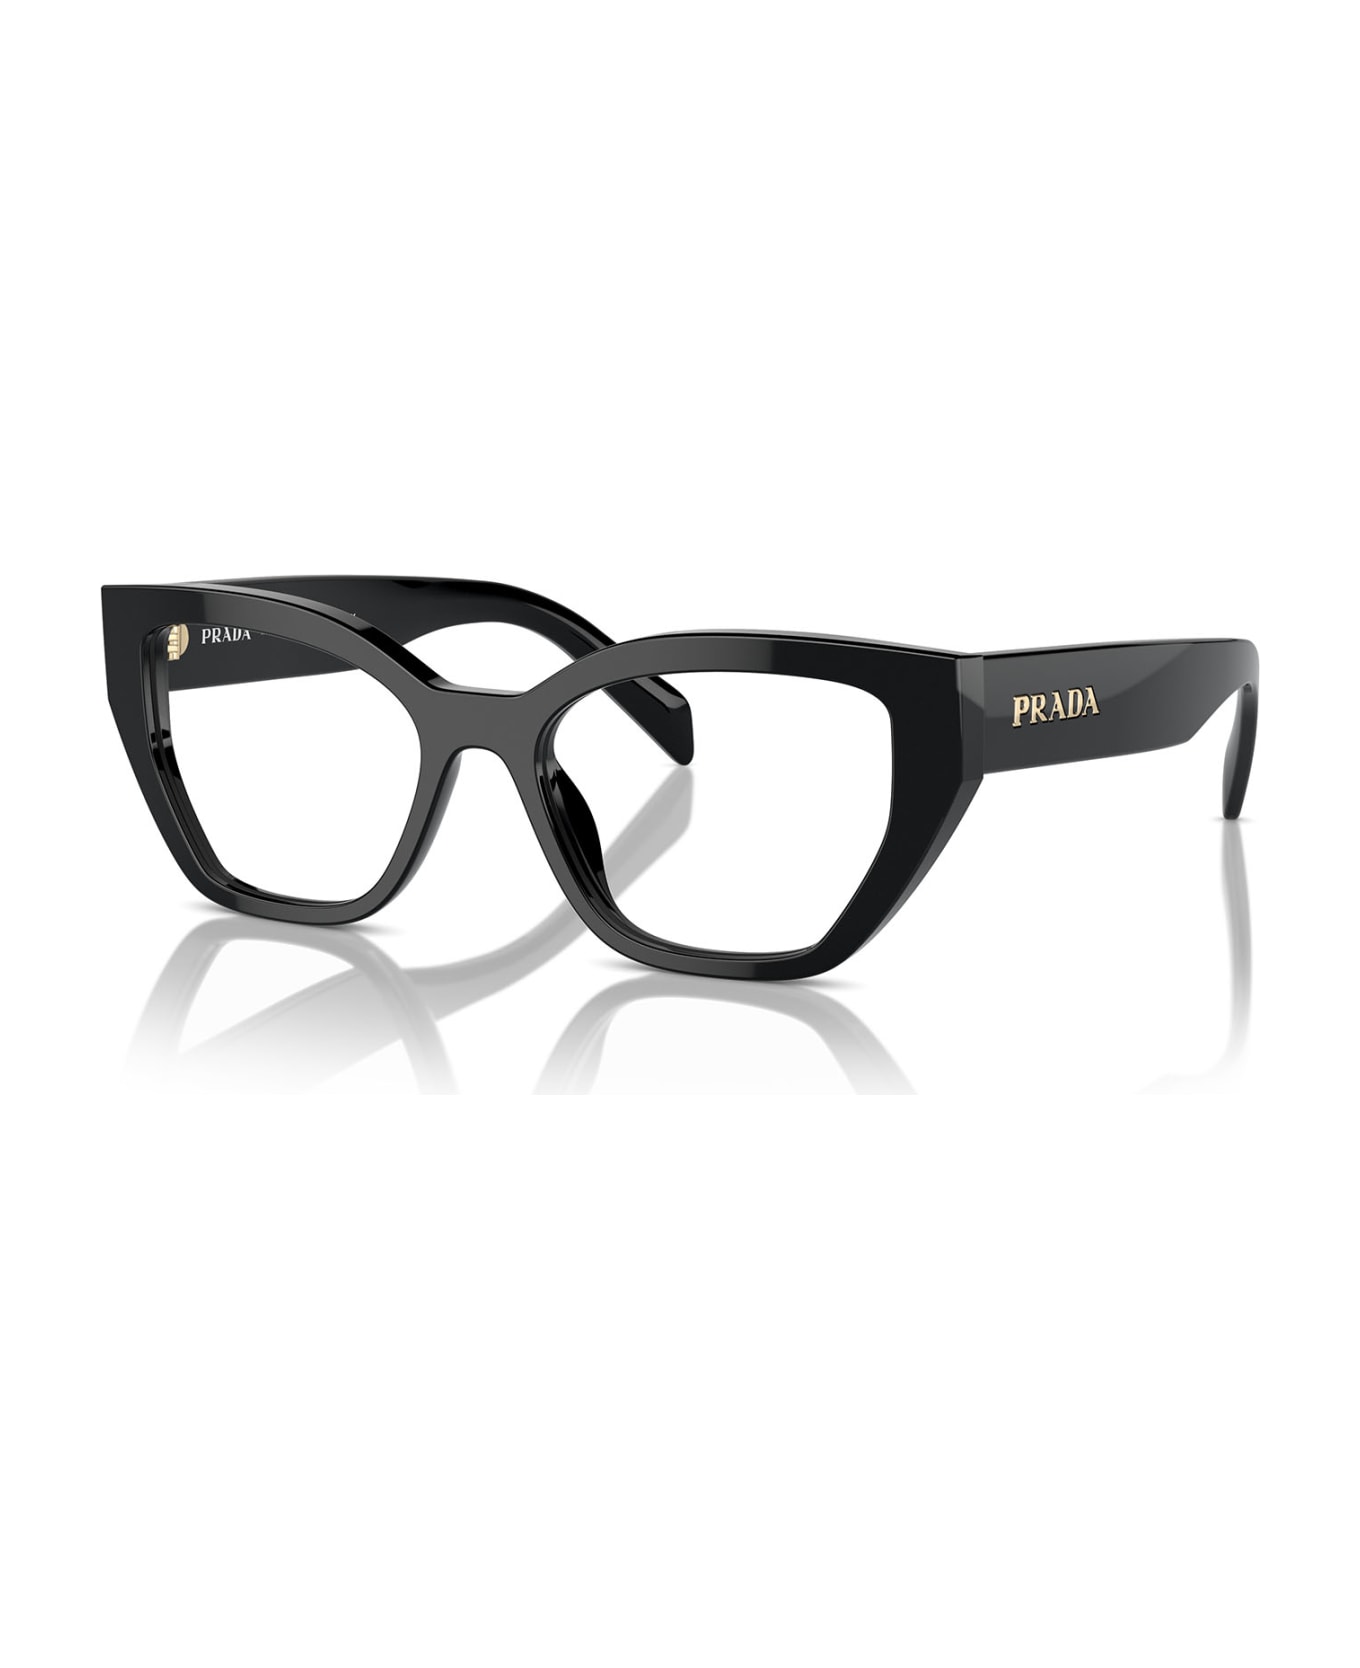 Prada Eyewear Pr A16v Black Glasses - Black アイウェア